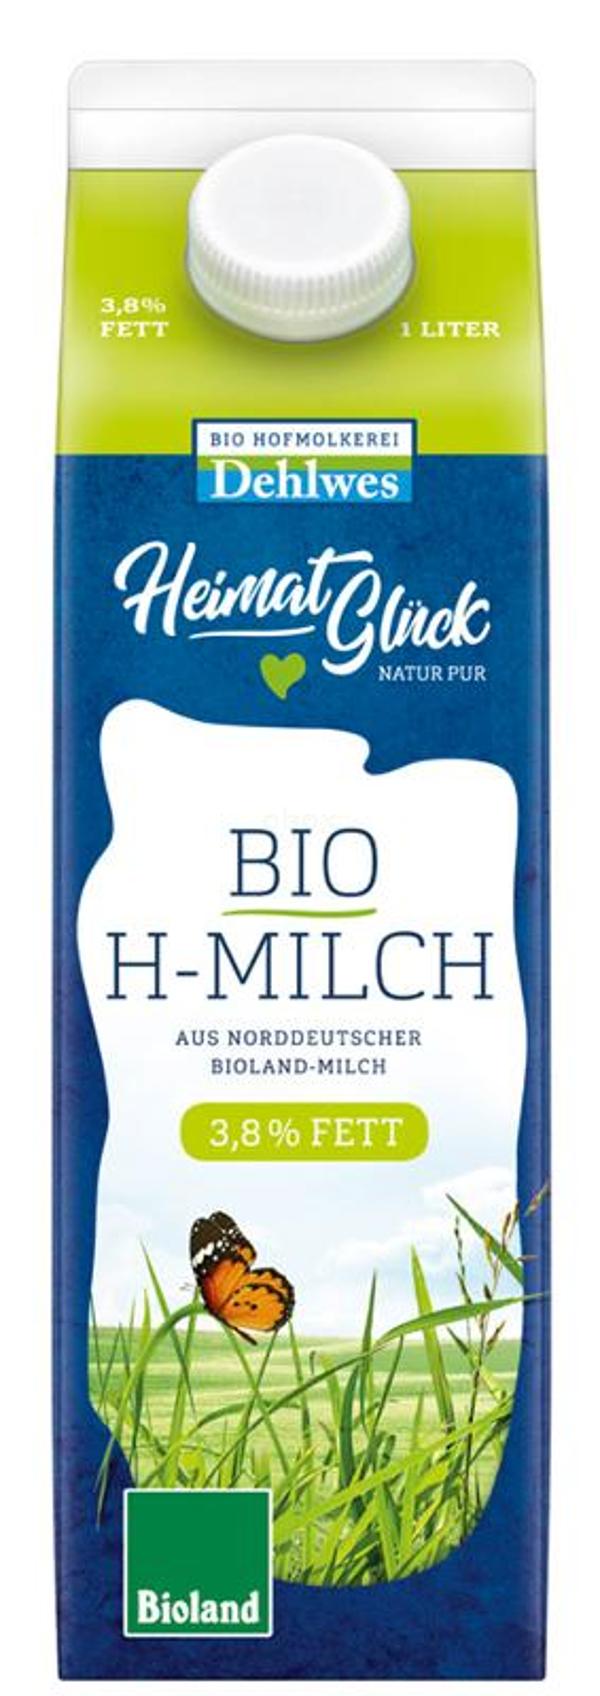 Produktfoto zu H-Vollmilch, 3,8%, Bioland Hofmolkerei Dehlwes